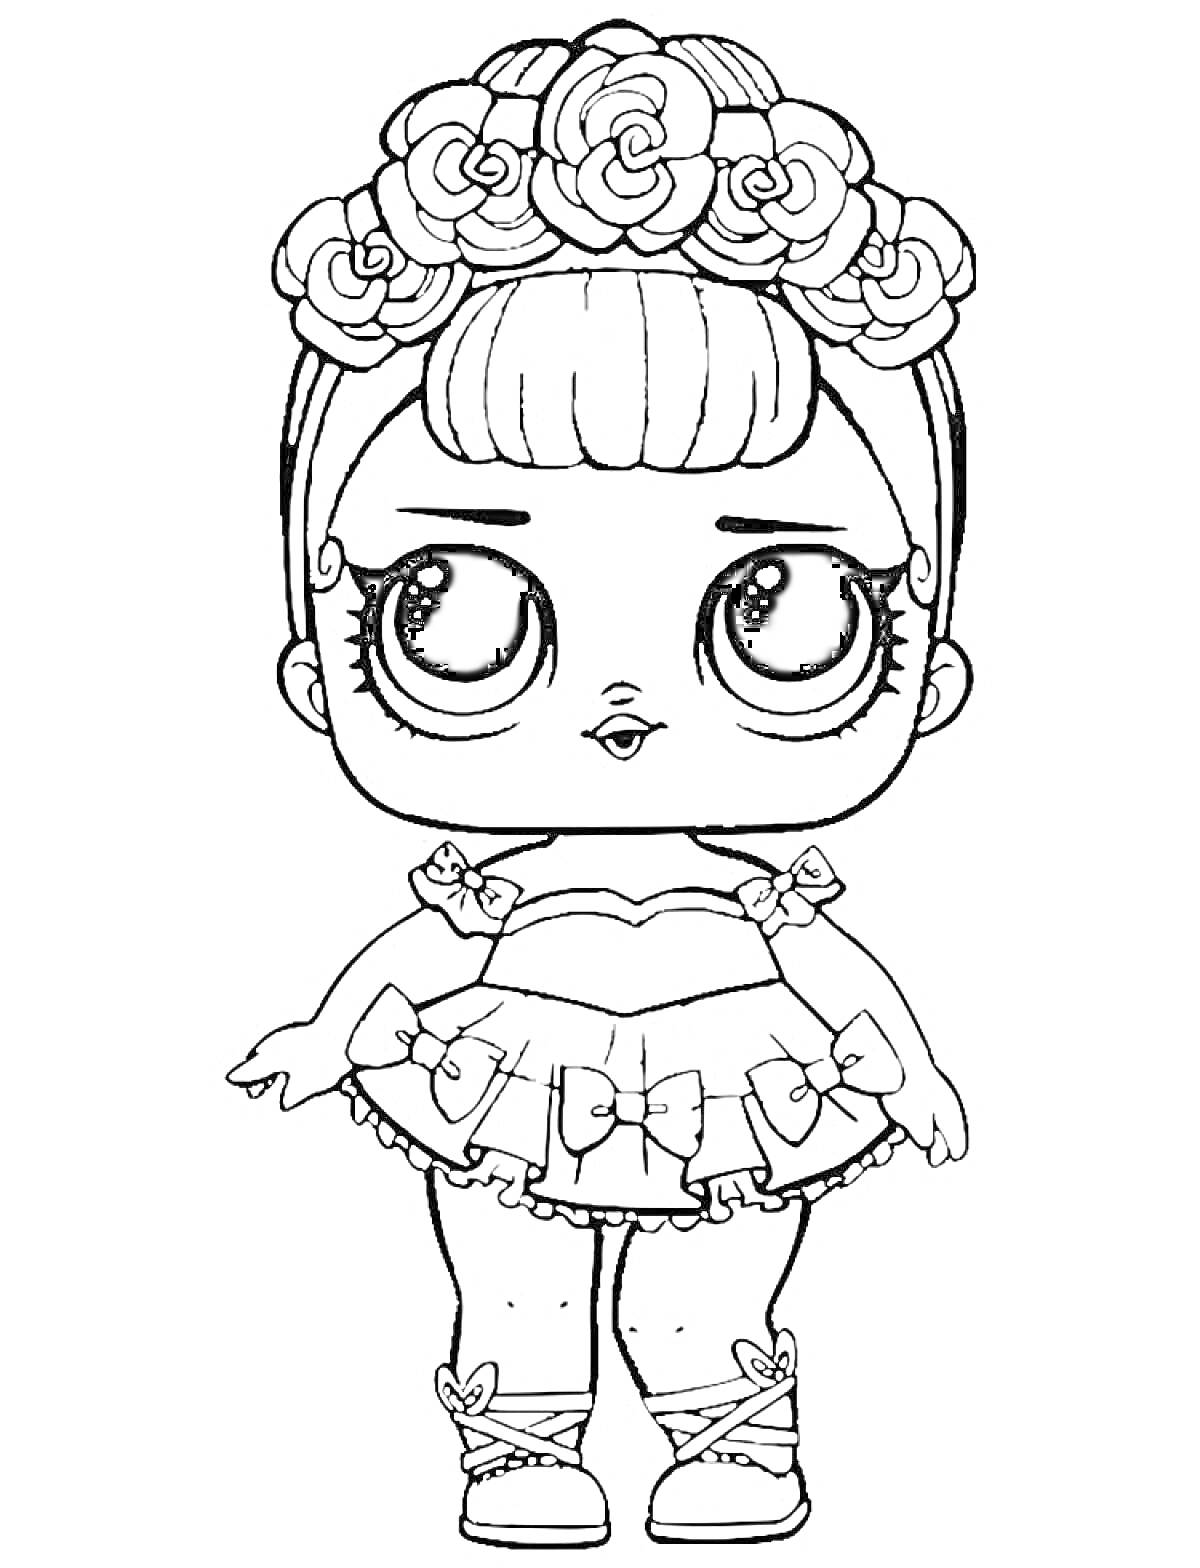 Кукла Лол с венком из цветов на голове, одетая в платье с бантиками и туфли с бантиками